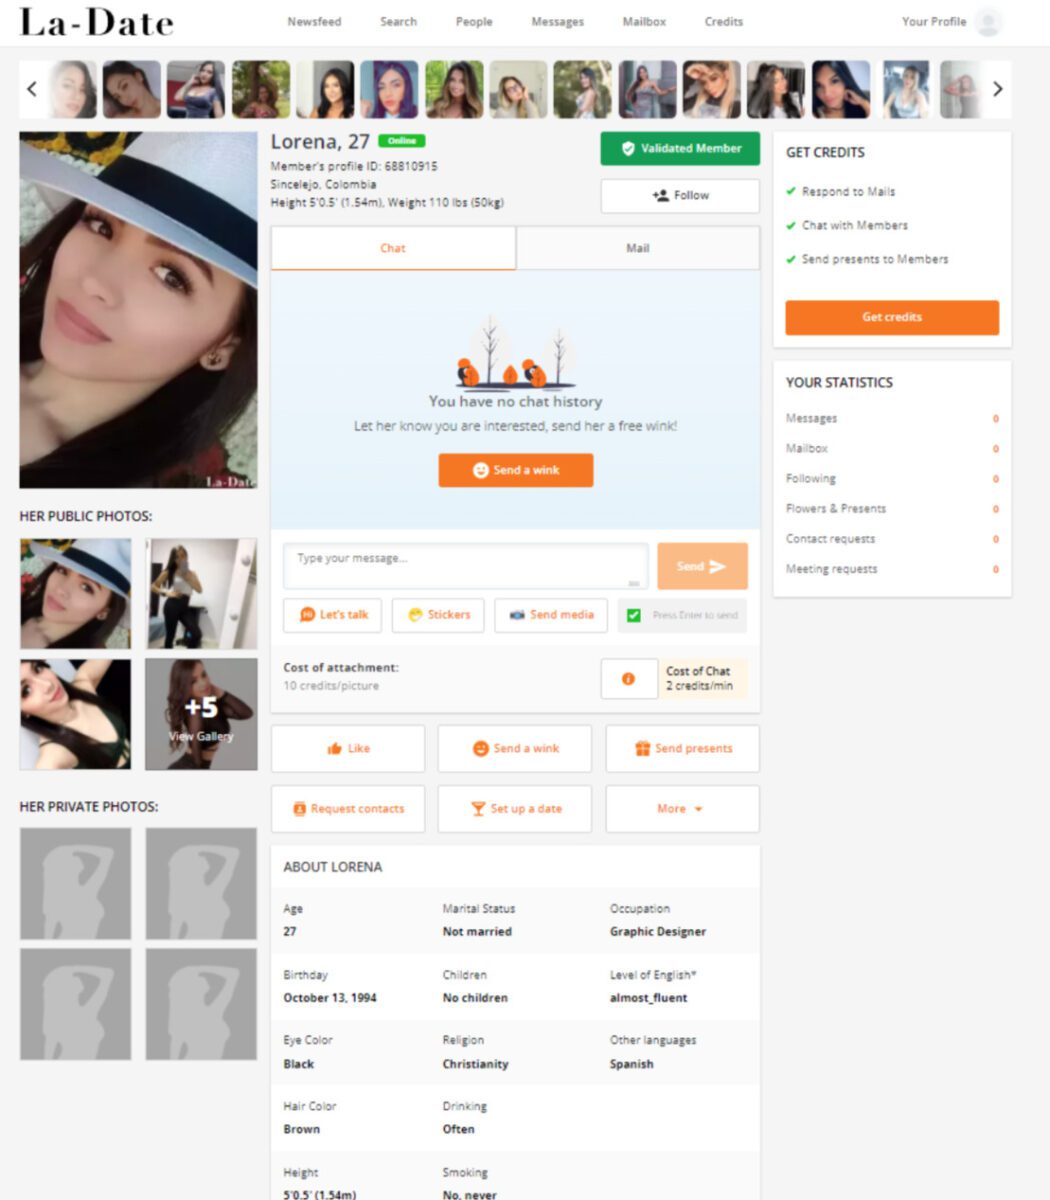 Un esempio di profilo femminile su LaDate.com oltre alle funzioni di comunicazione disponibili